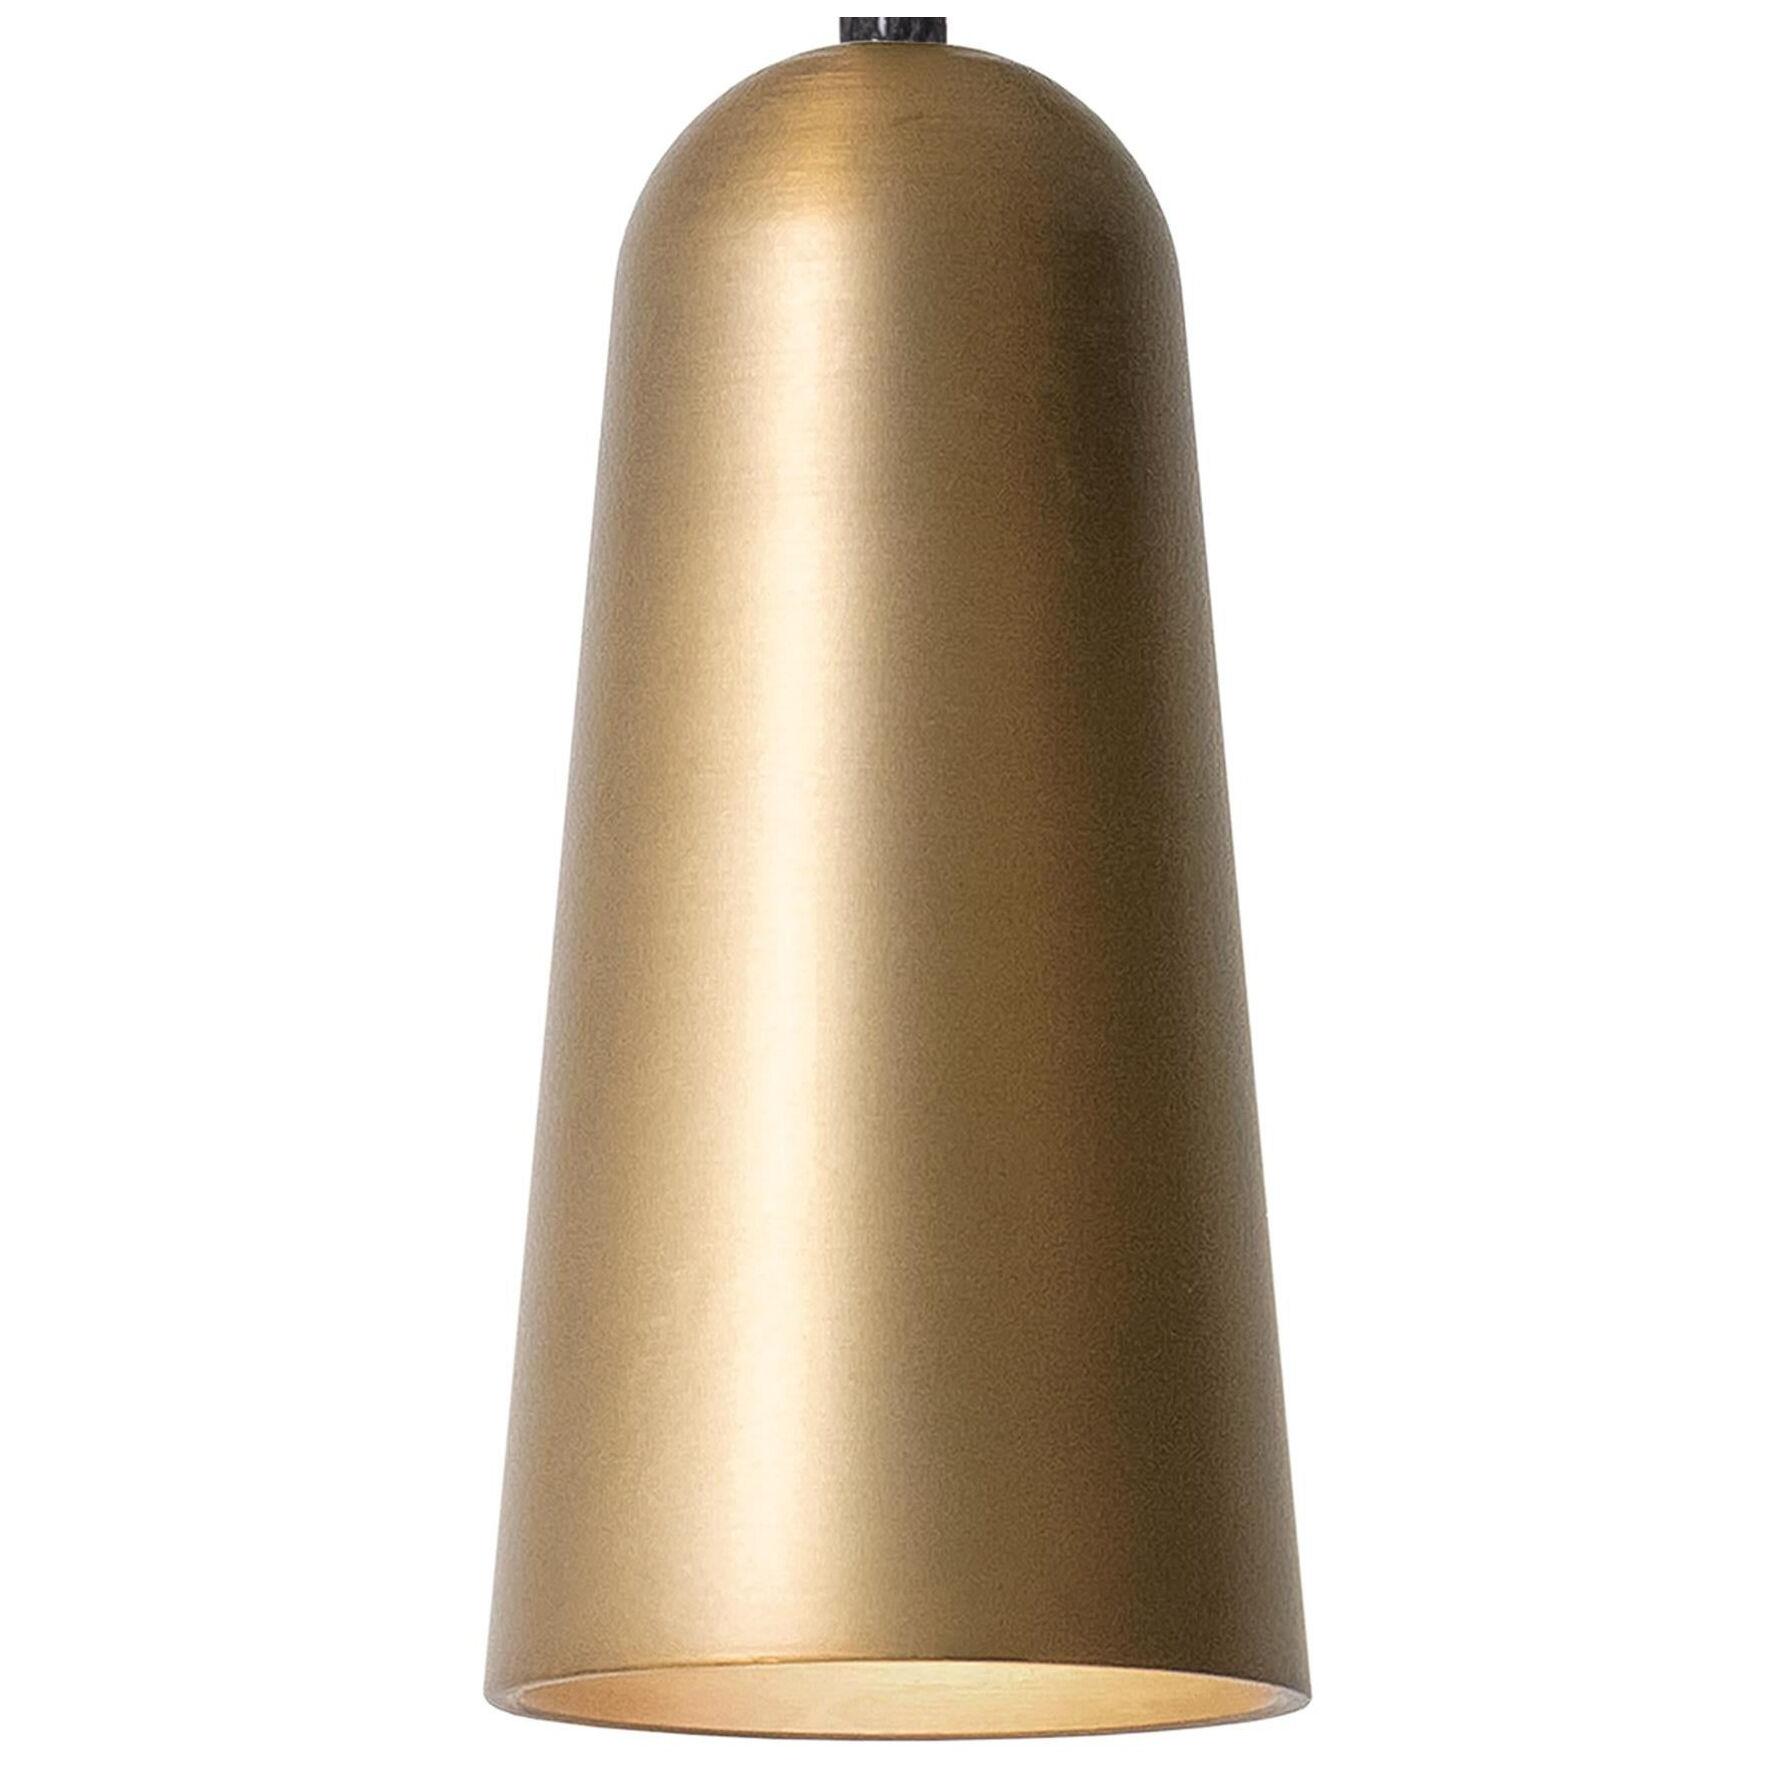 Henrik Tengler 3493-6 Massiv Lamp by Konsthantverk